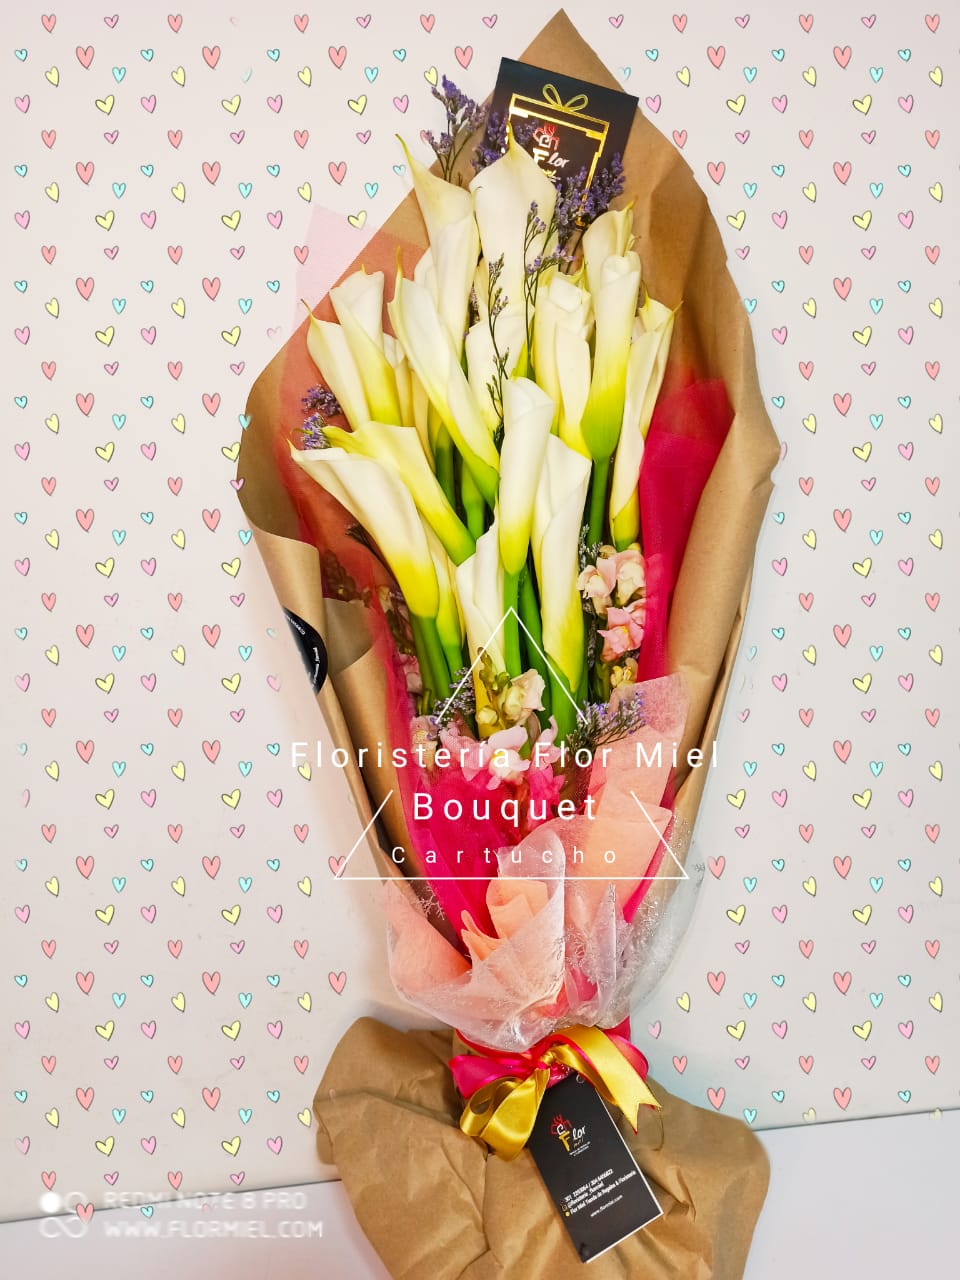 Bouquet Cartuchos Para Ti Flor Miel | FLOR MIEL